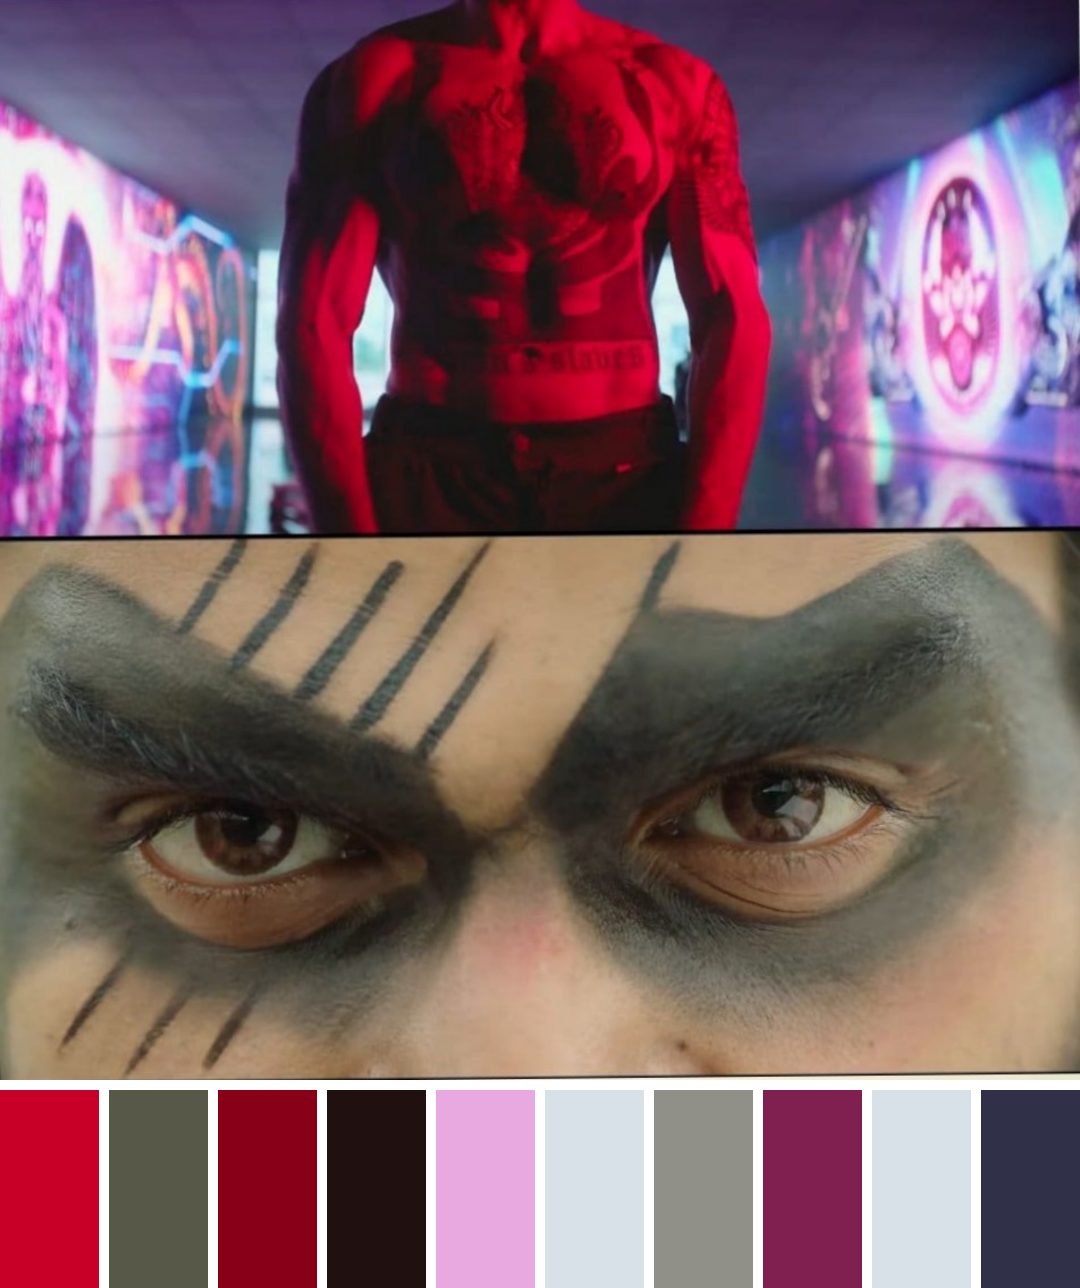 Valimai Movie Trailer Colour Psychology Nirav Shah